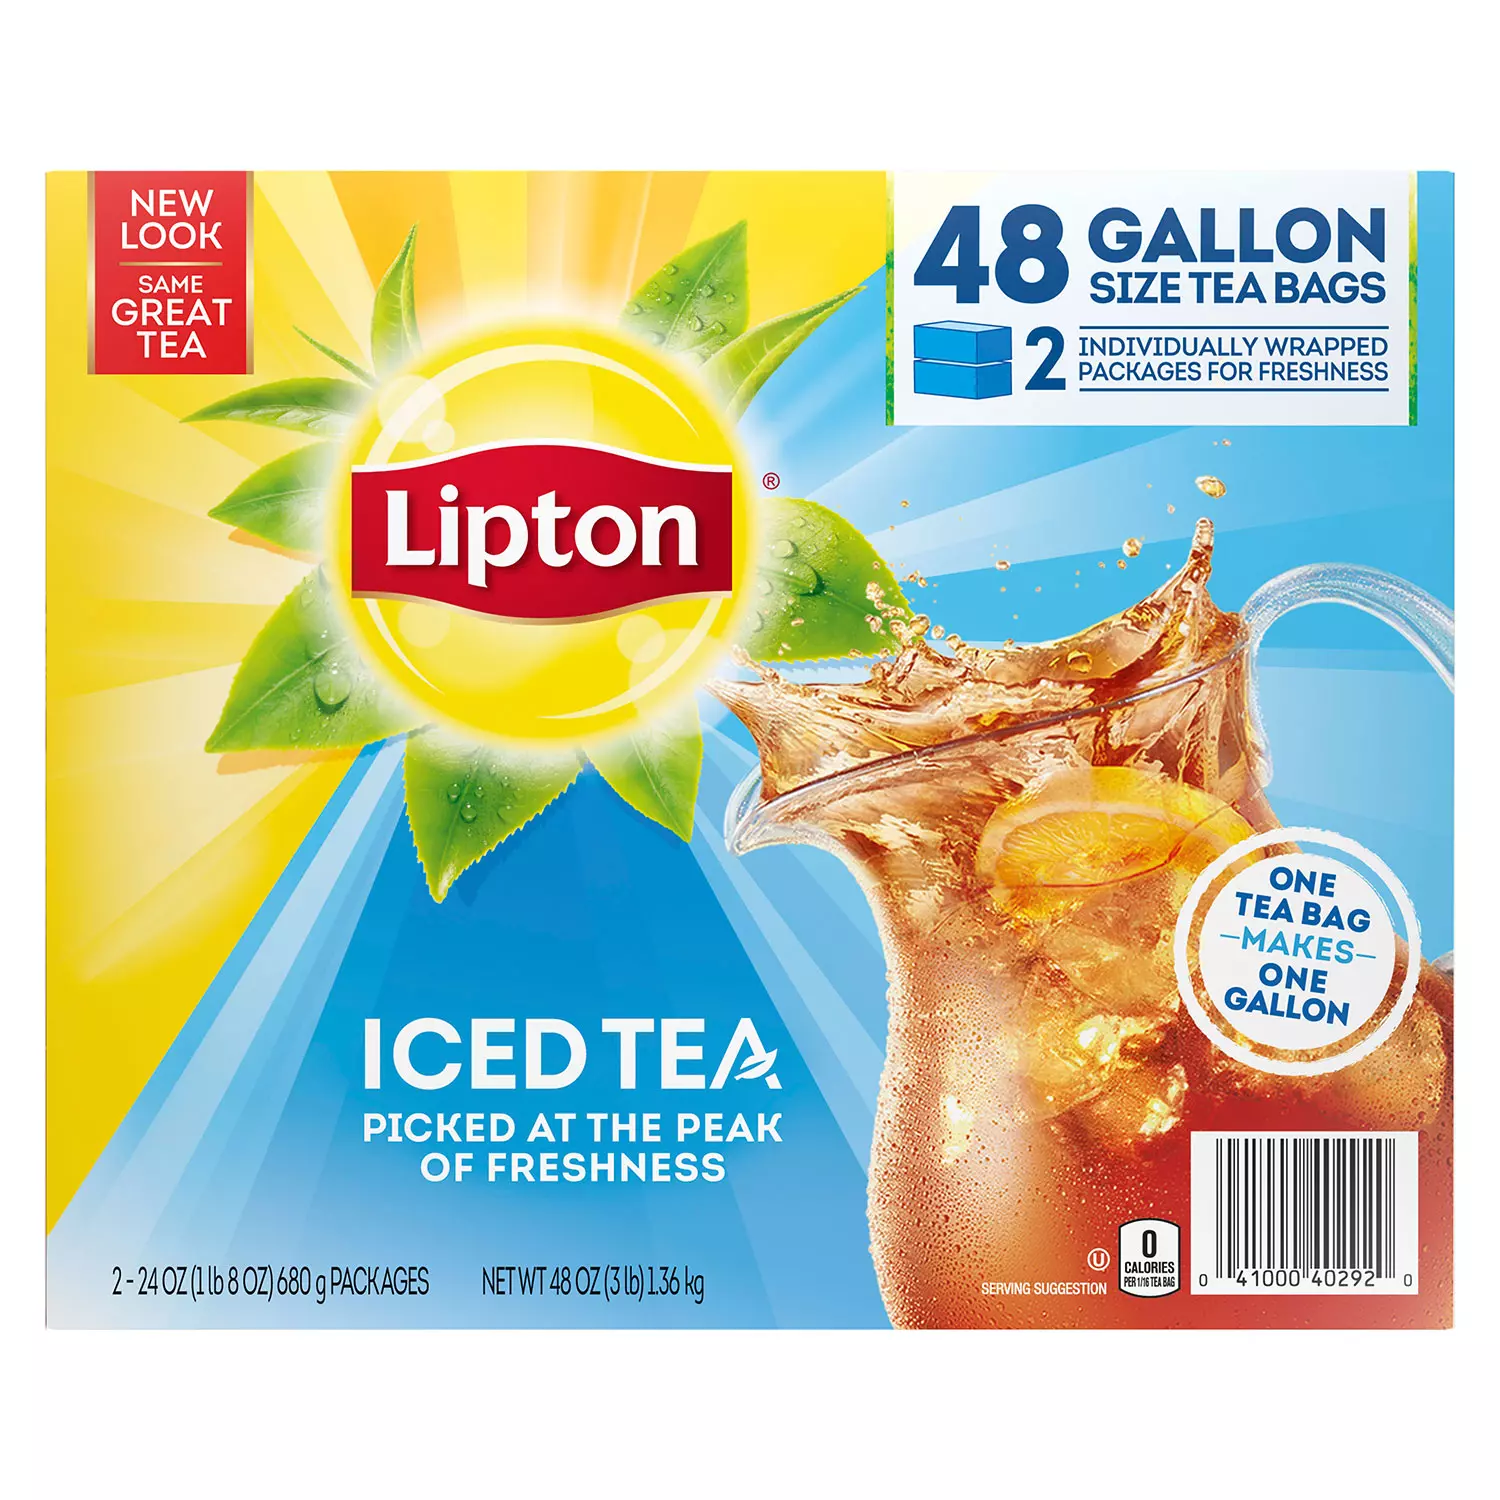 Lipton Iced Tea Gallon Size Tea Bags